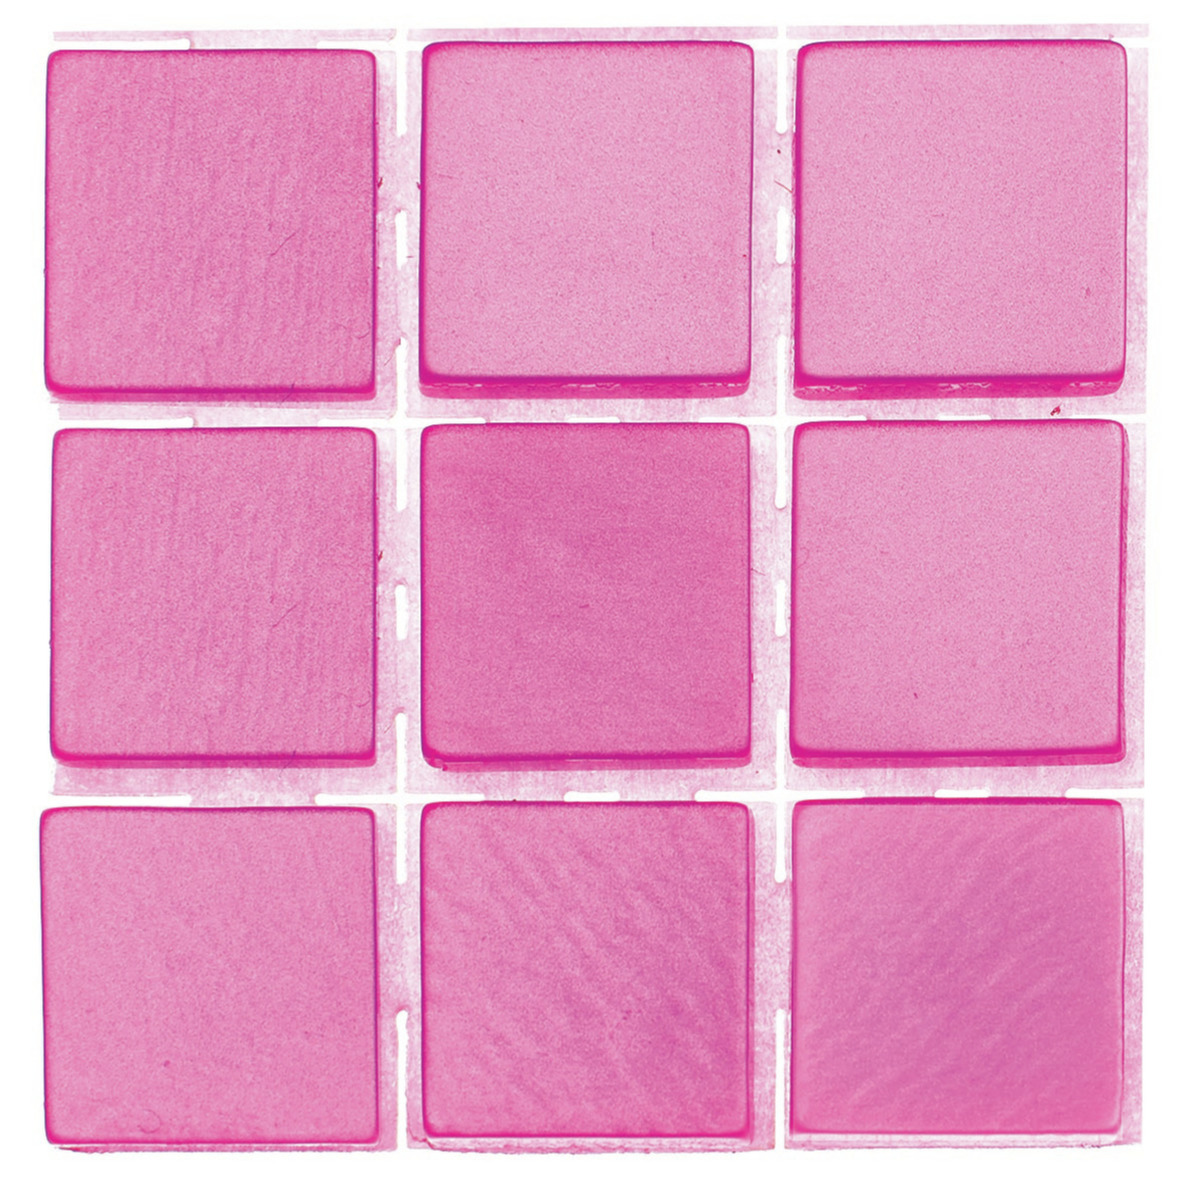 63x stuks mozaieken maken steentjes-tegels kleur roze 10 x 10 x 2 mm